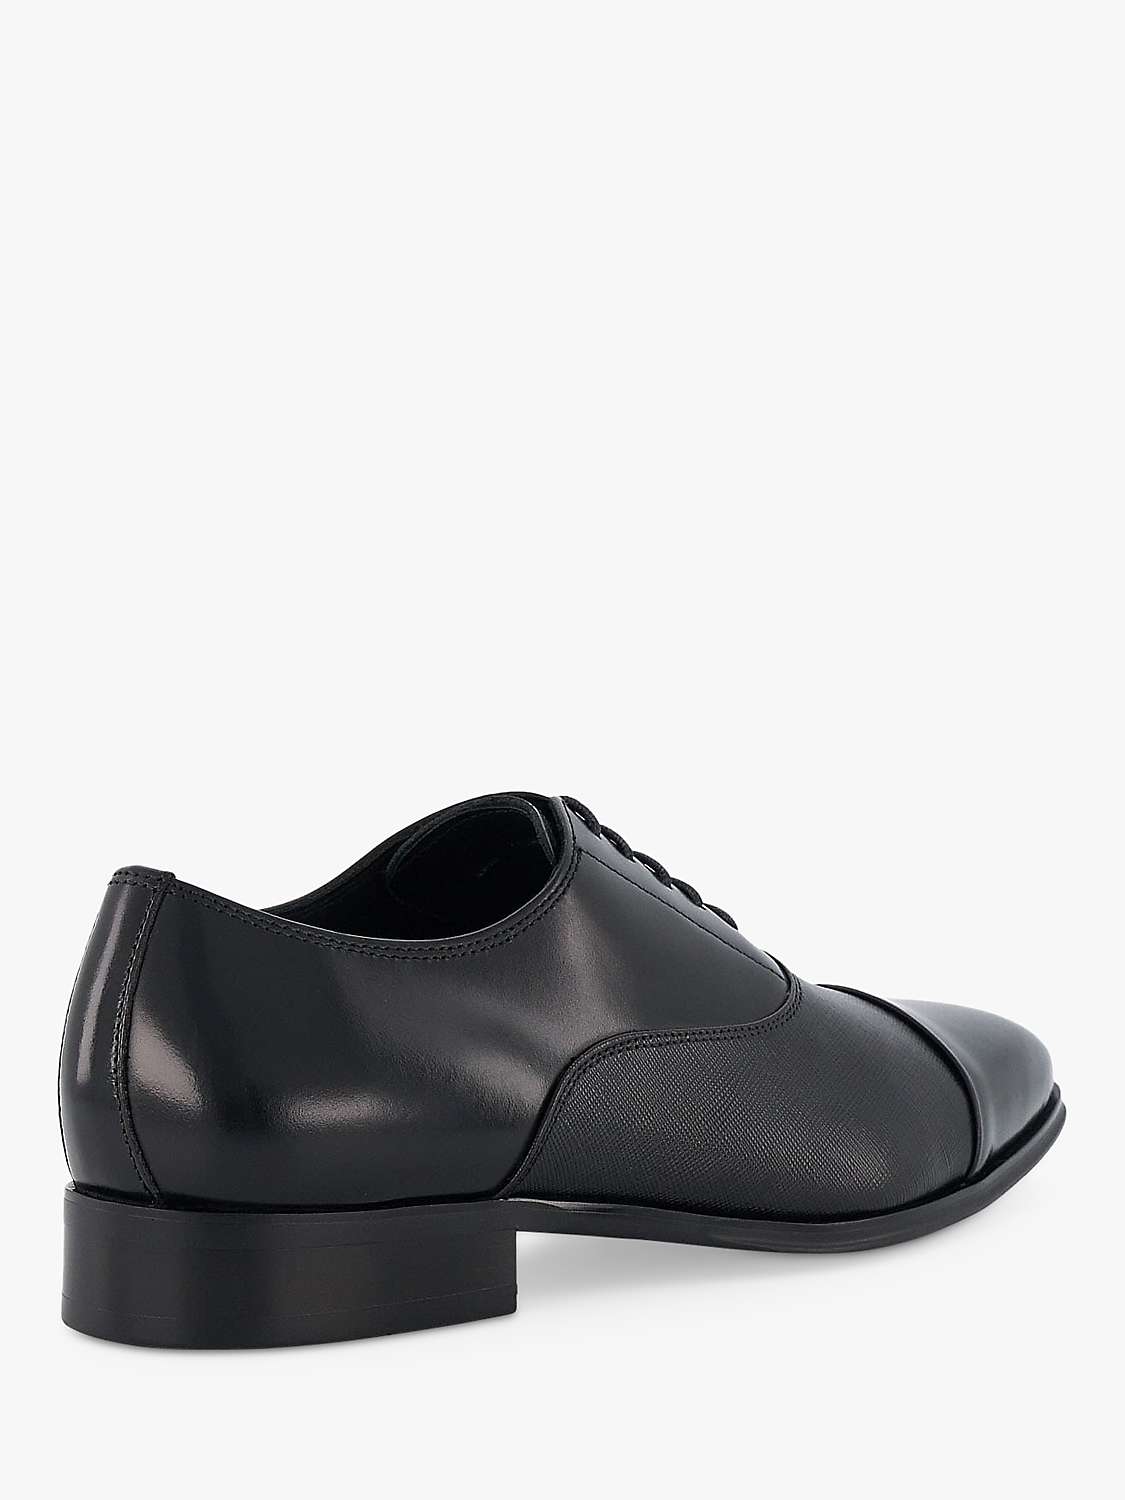 Buy Dune Slating Leather Oxford Shoes, Black Online at johnlewis.com